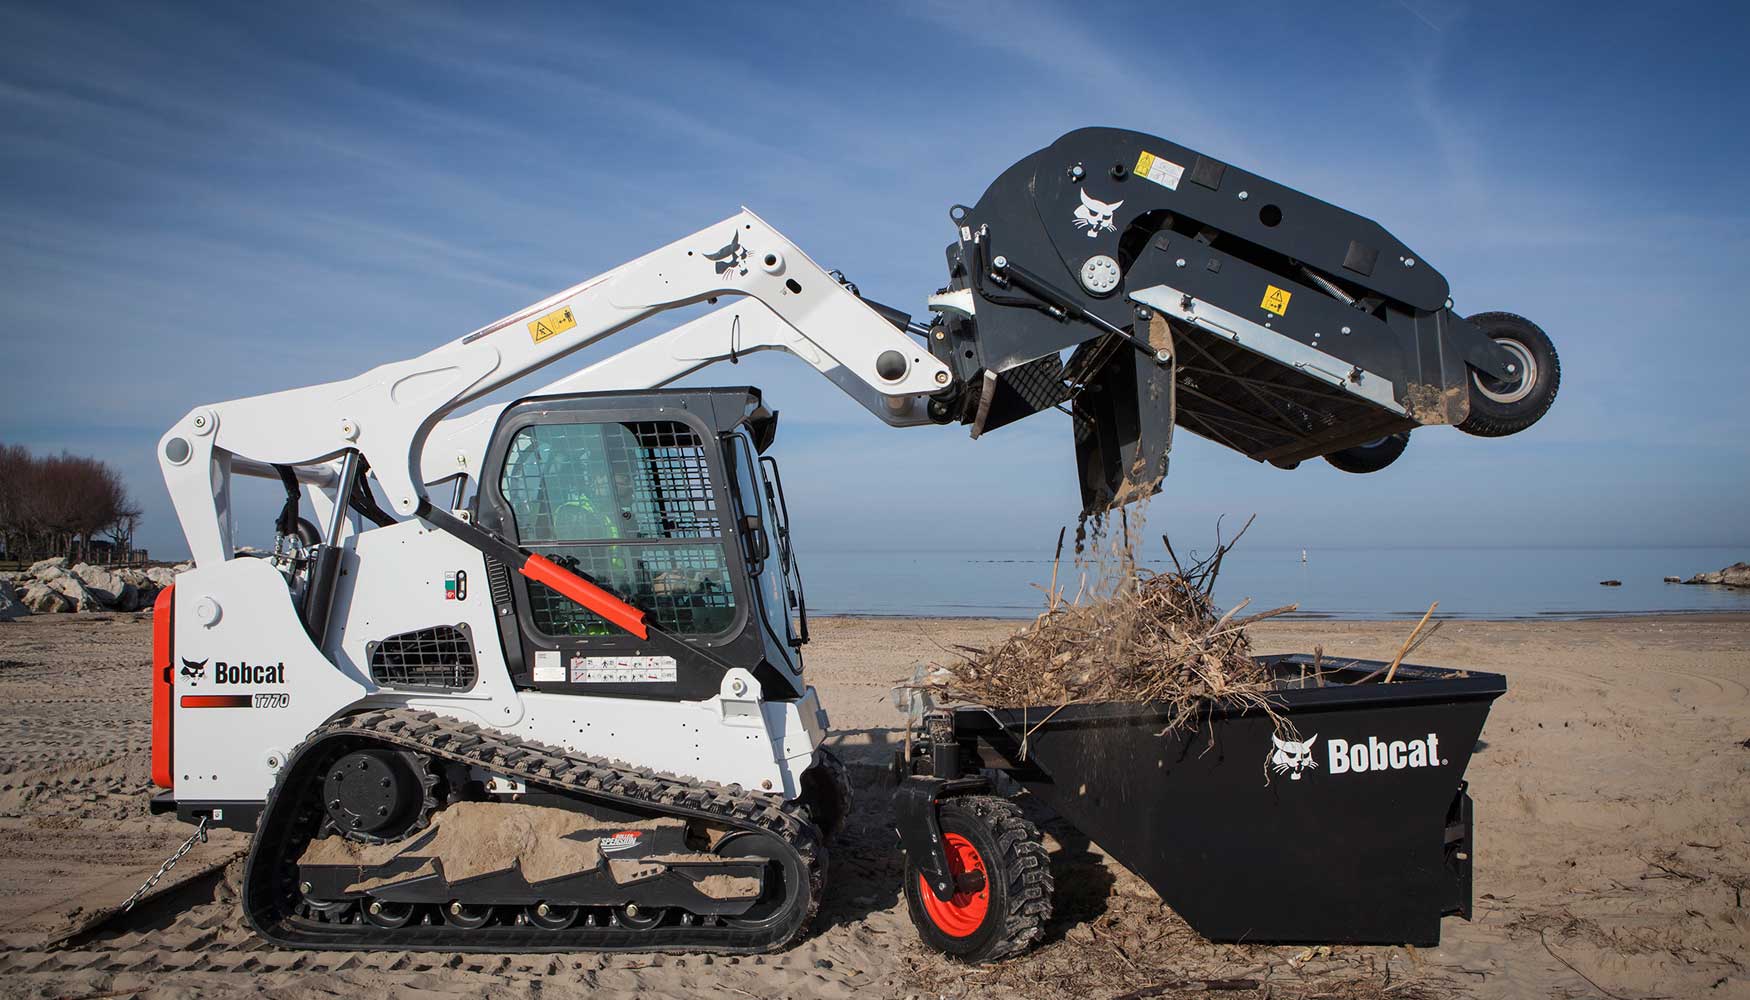 El nuevo limpiador permite tamizar arena o tierra rpidamente y retirar basura y objetos tan pequeos como colillas